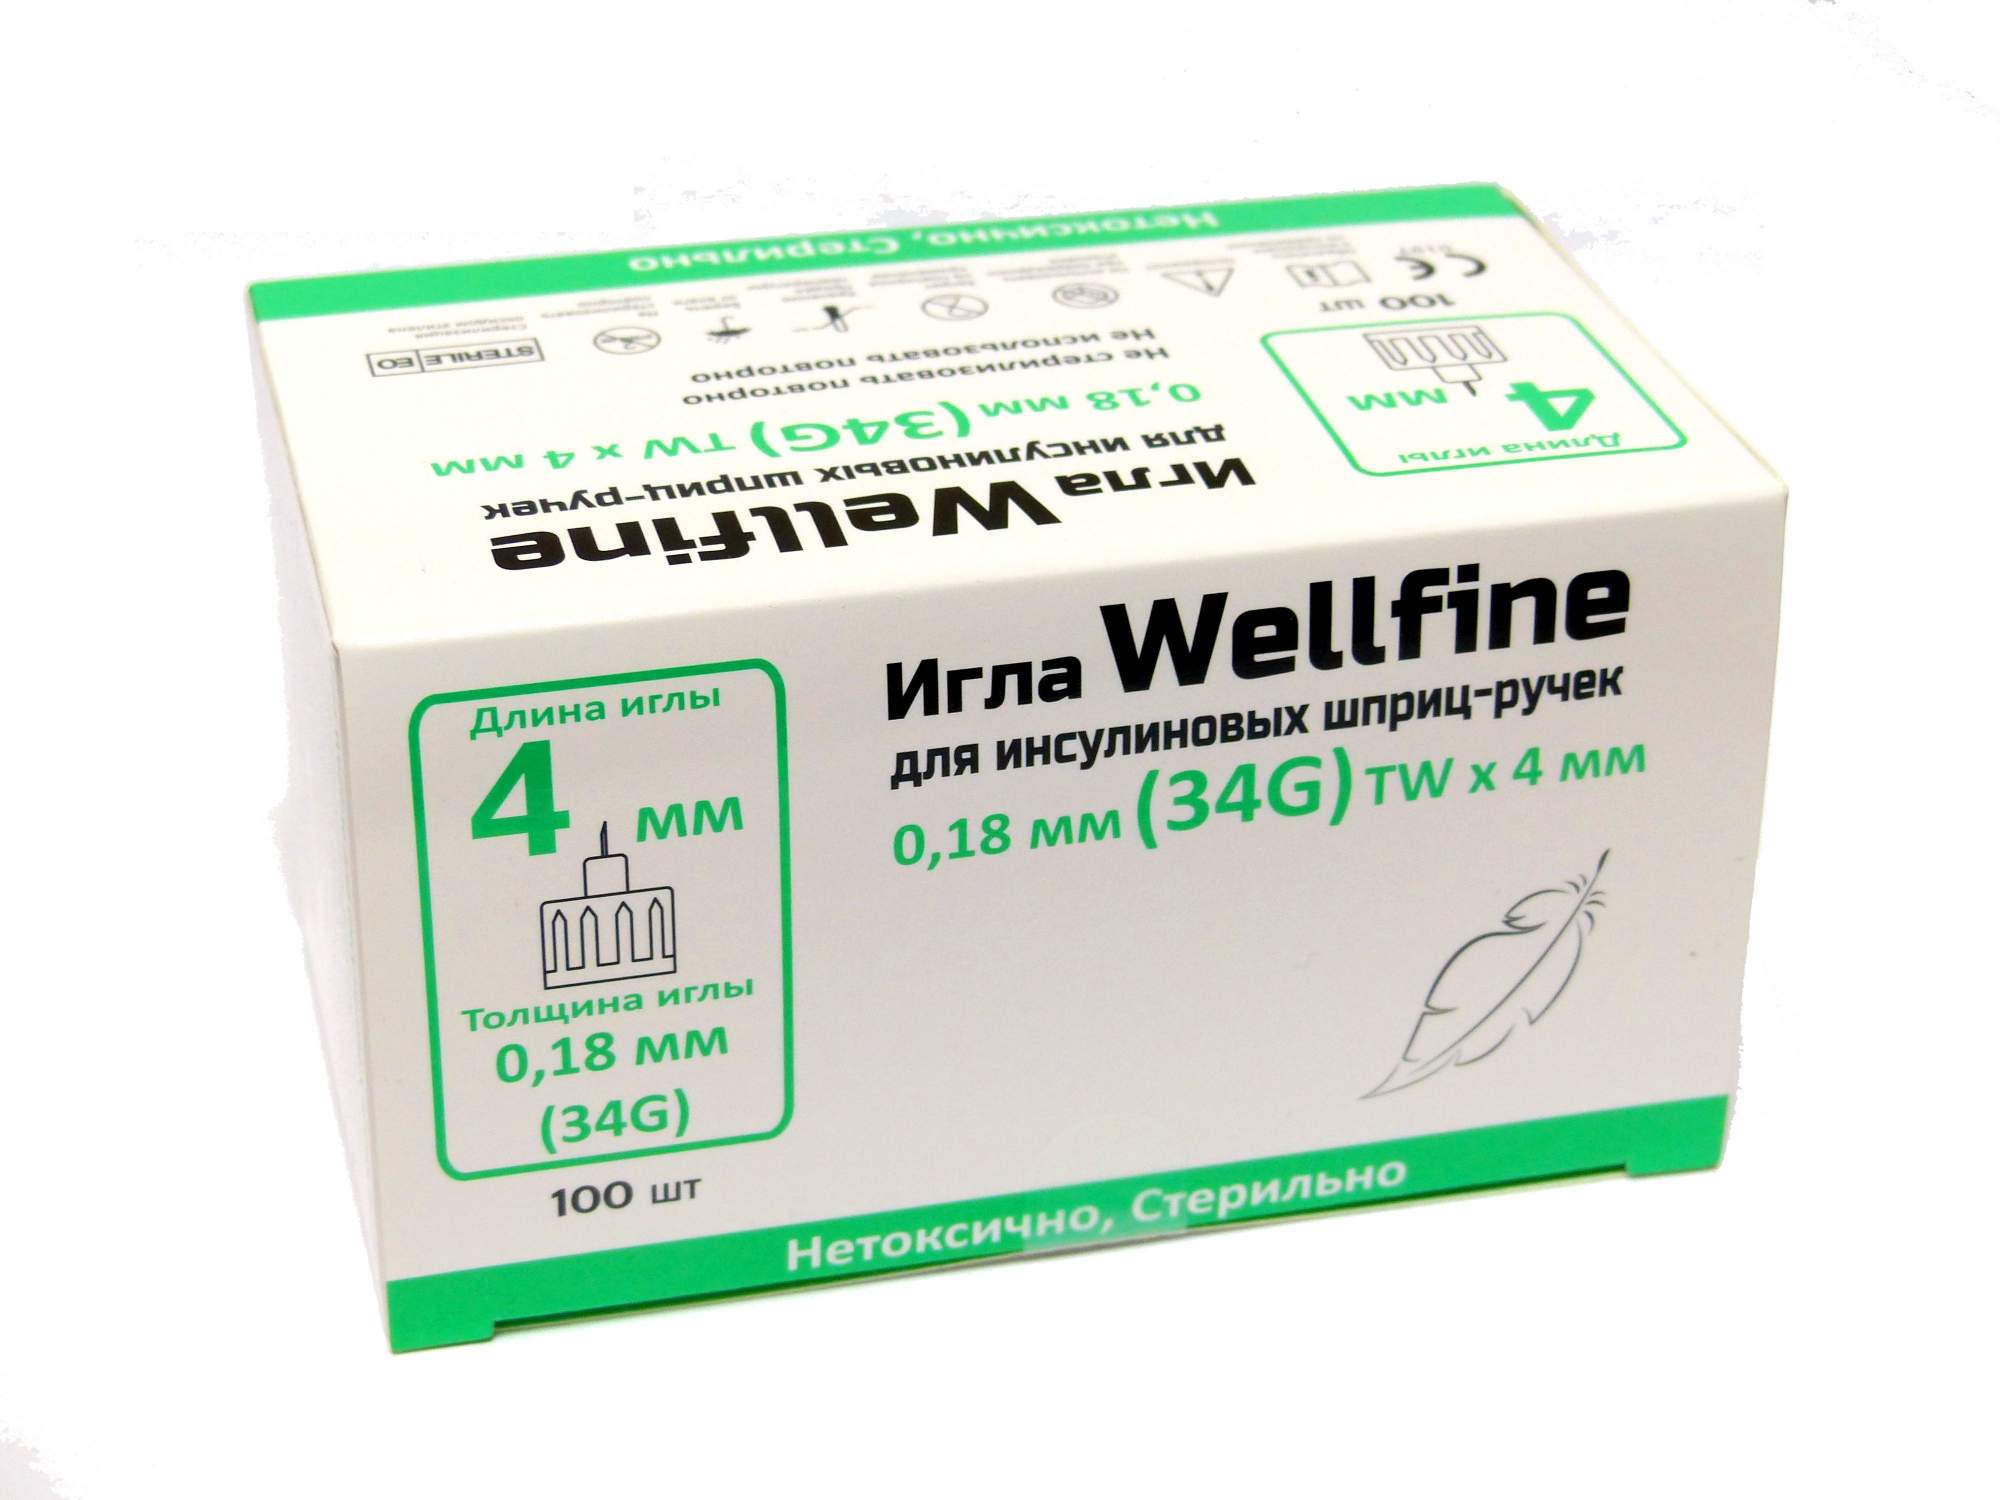 Иглы Веллфайн WellFine 34G 0,18 мм длина 4 мм для шприц-ручек 100 шт. - купить в интернет-магазинах, цены на Мегамаркет | иглы медицинские well-fine-34g-4mm